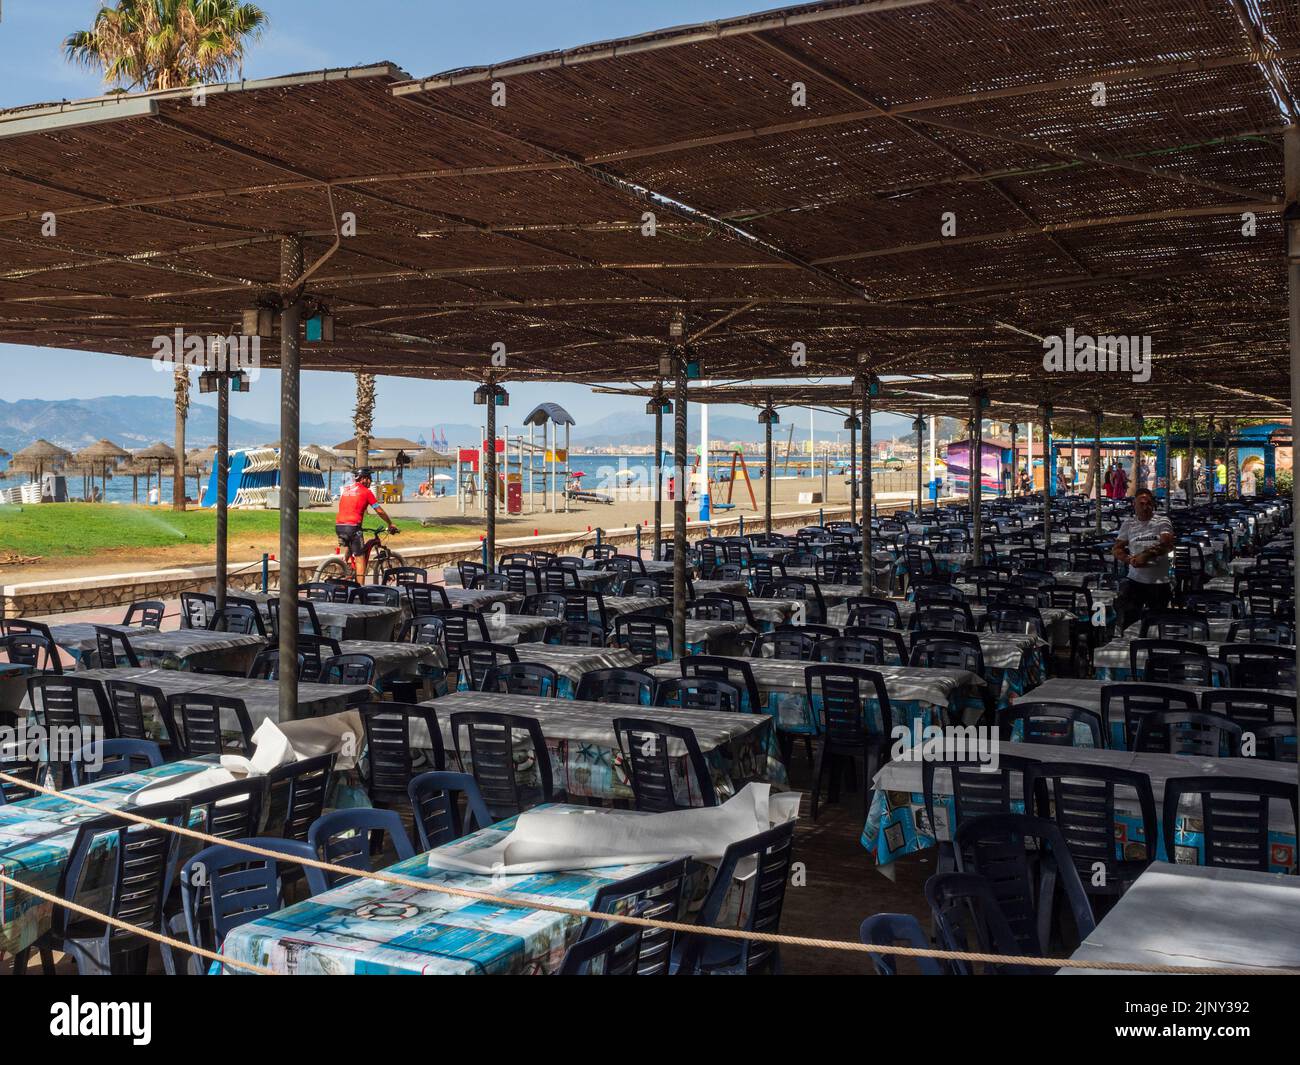 Terrazza affacciata sul mare del ristorante 'El Tintero', famoso a Malaga per la vendita all'asta delle porzioni di pesce fritto tra i suoi clienti. Foto Stock